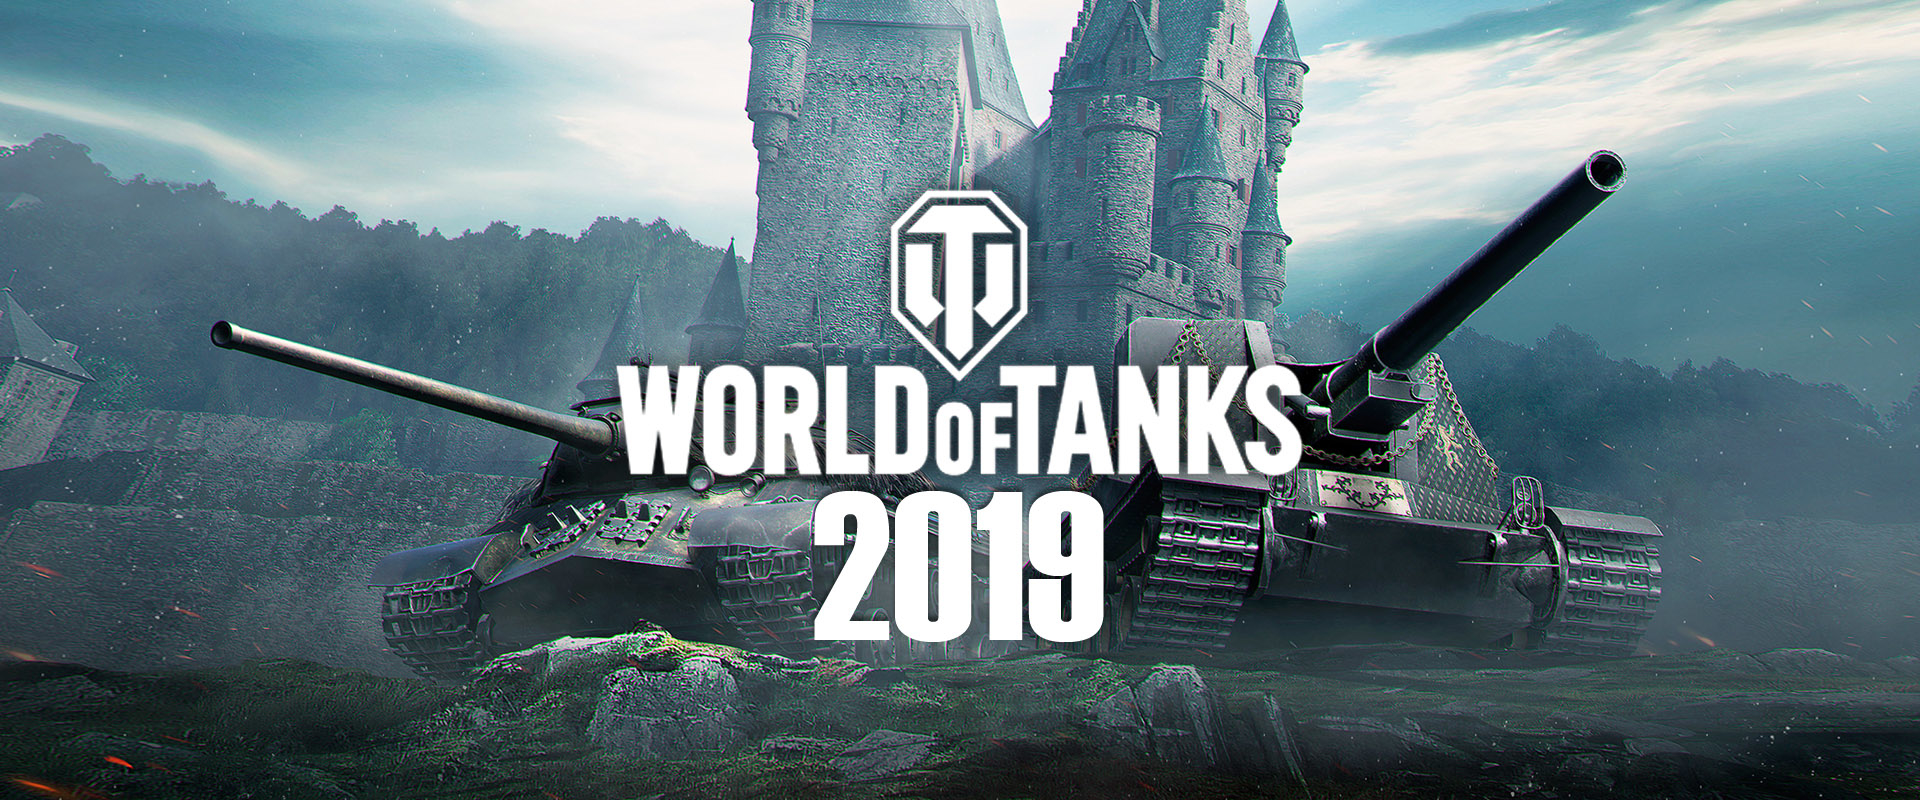 Tüzérek és japán nehéz tankok: belsős infók a WG Festről!